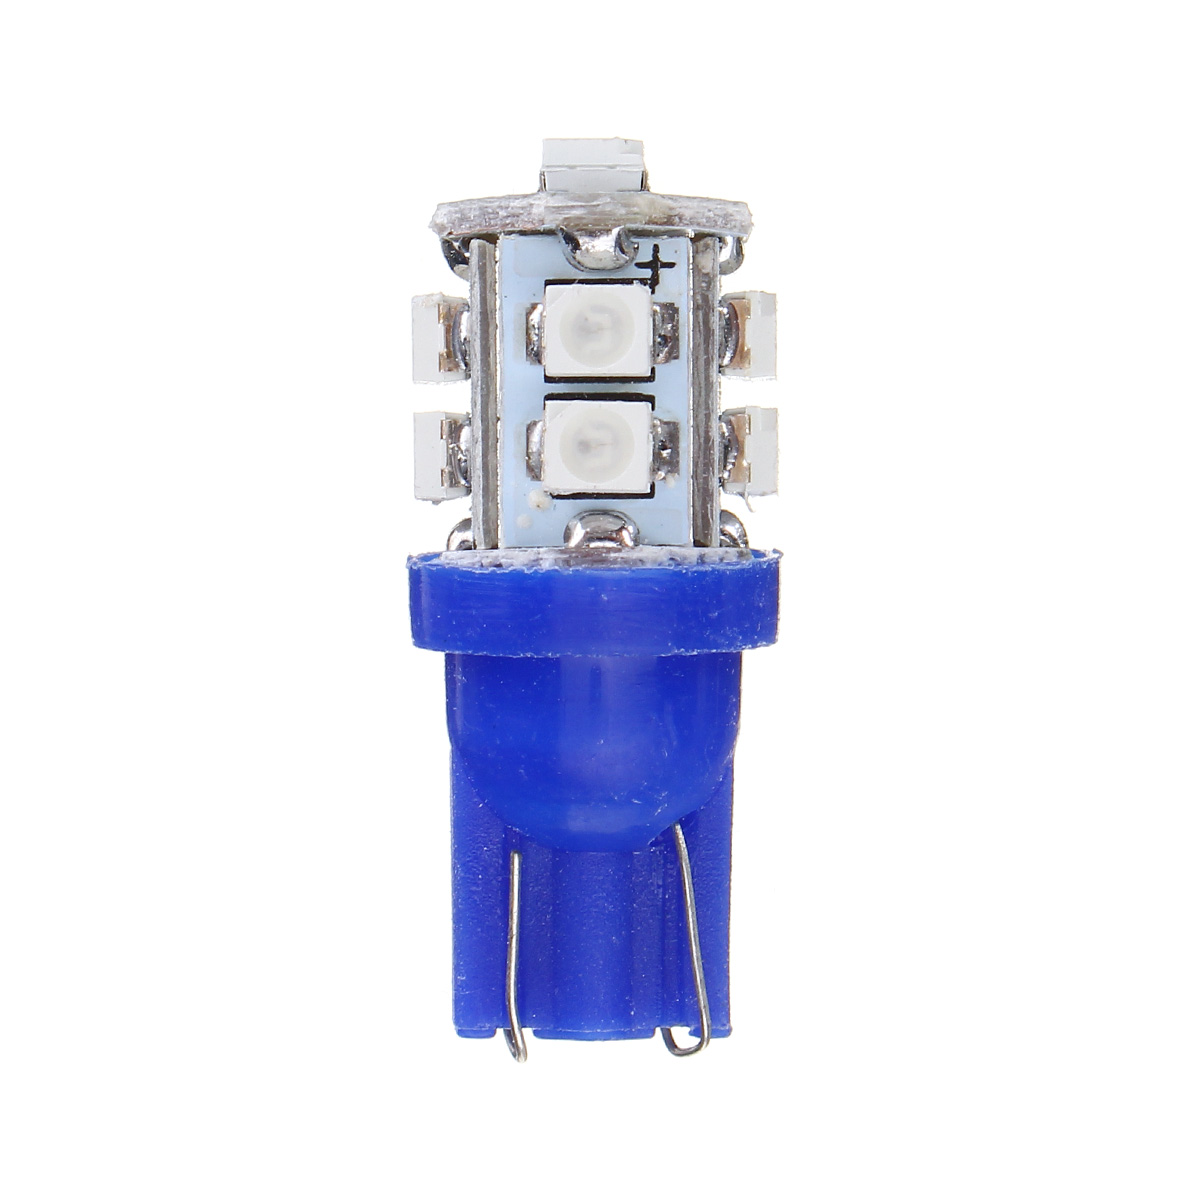 T10 1210 3528 0.5W 60LM Car 10SMD LED Side Marker Lights Bulb Width Lamp Blue